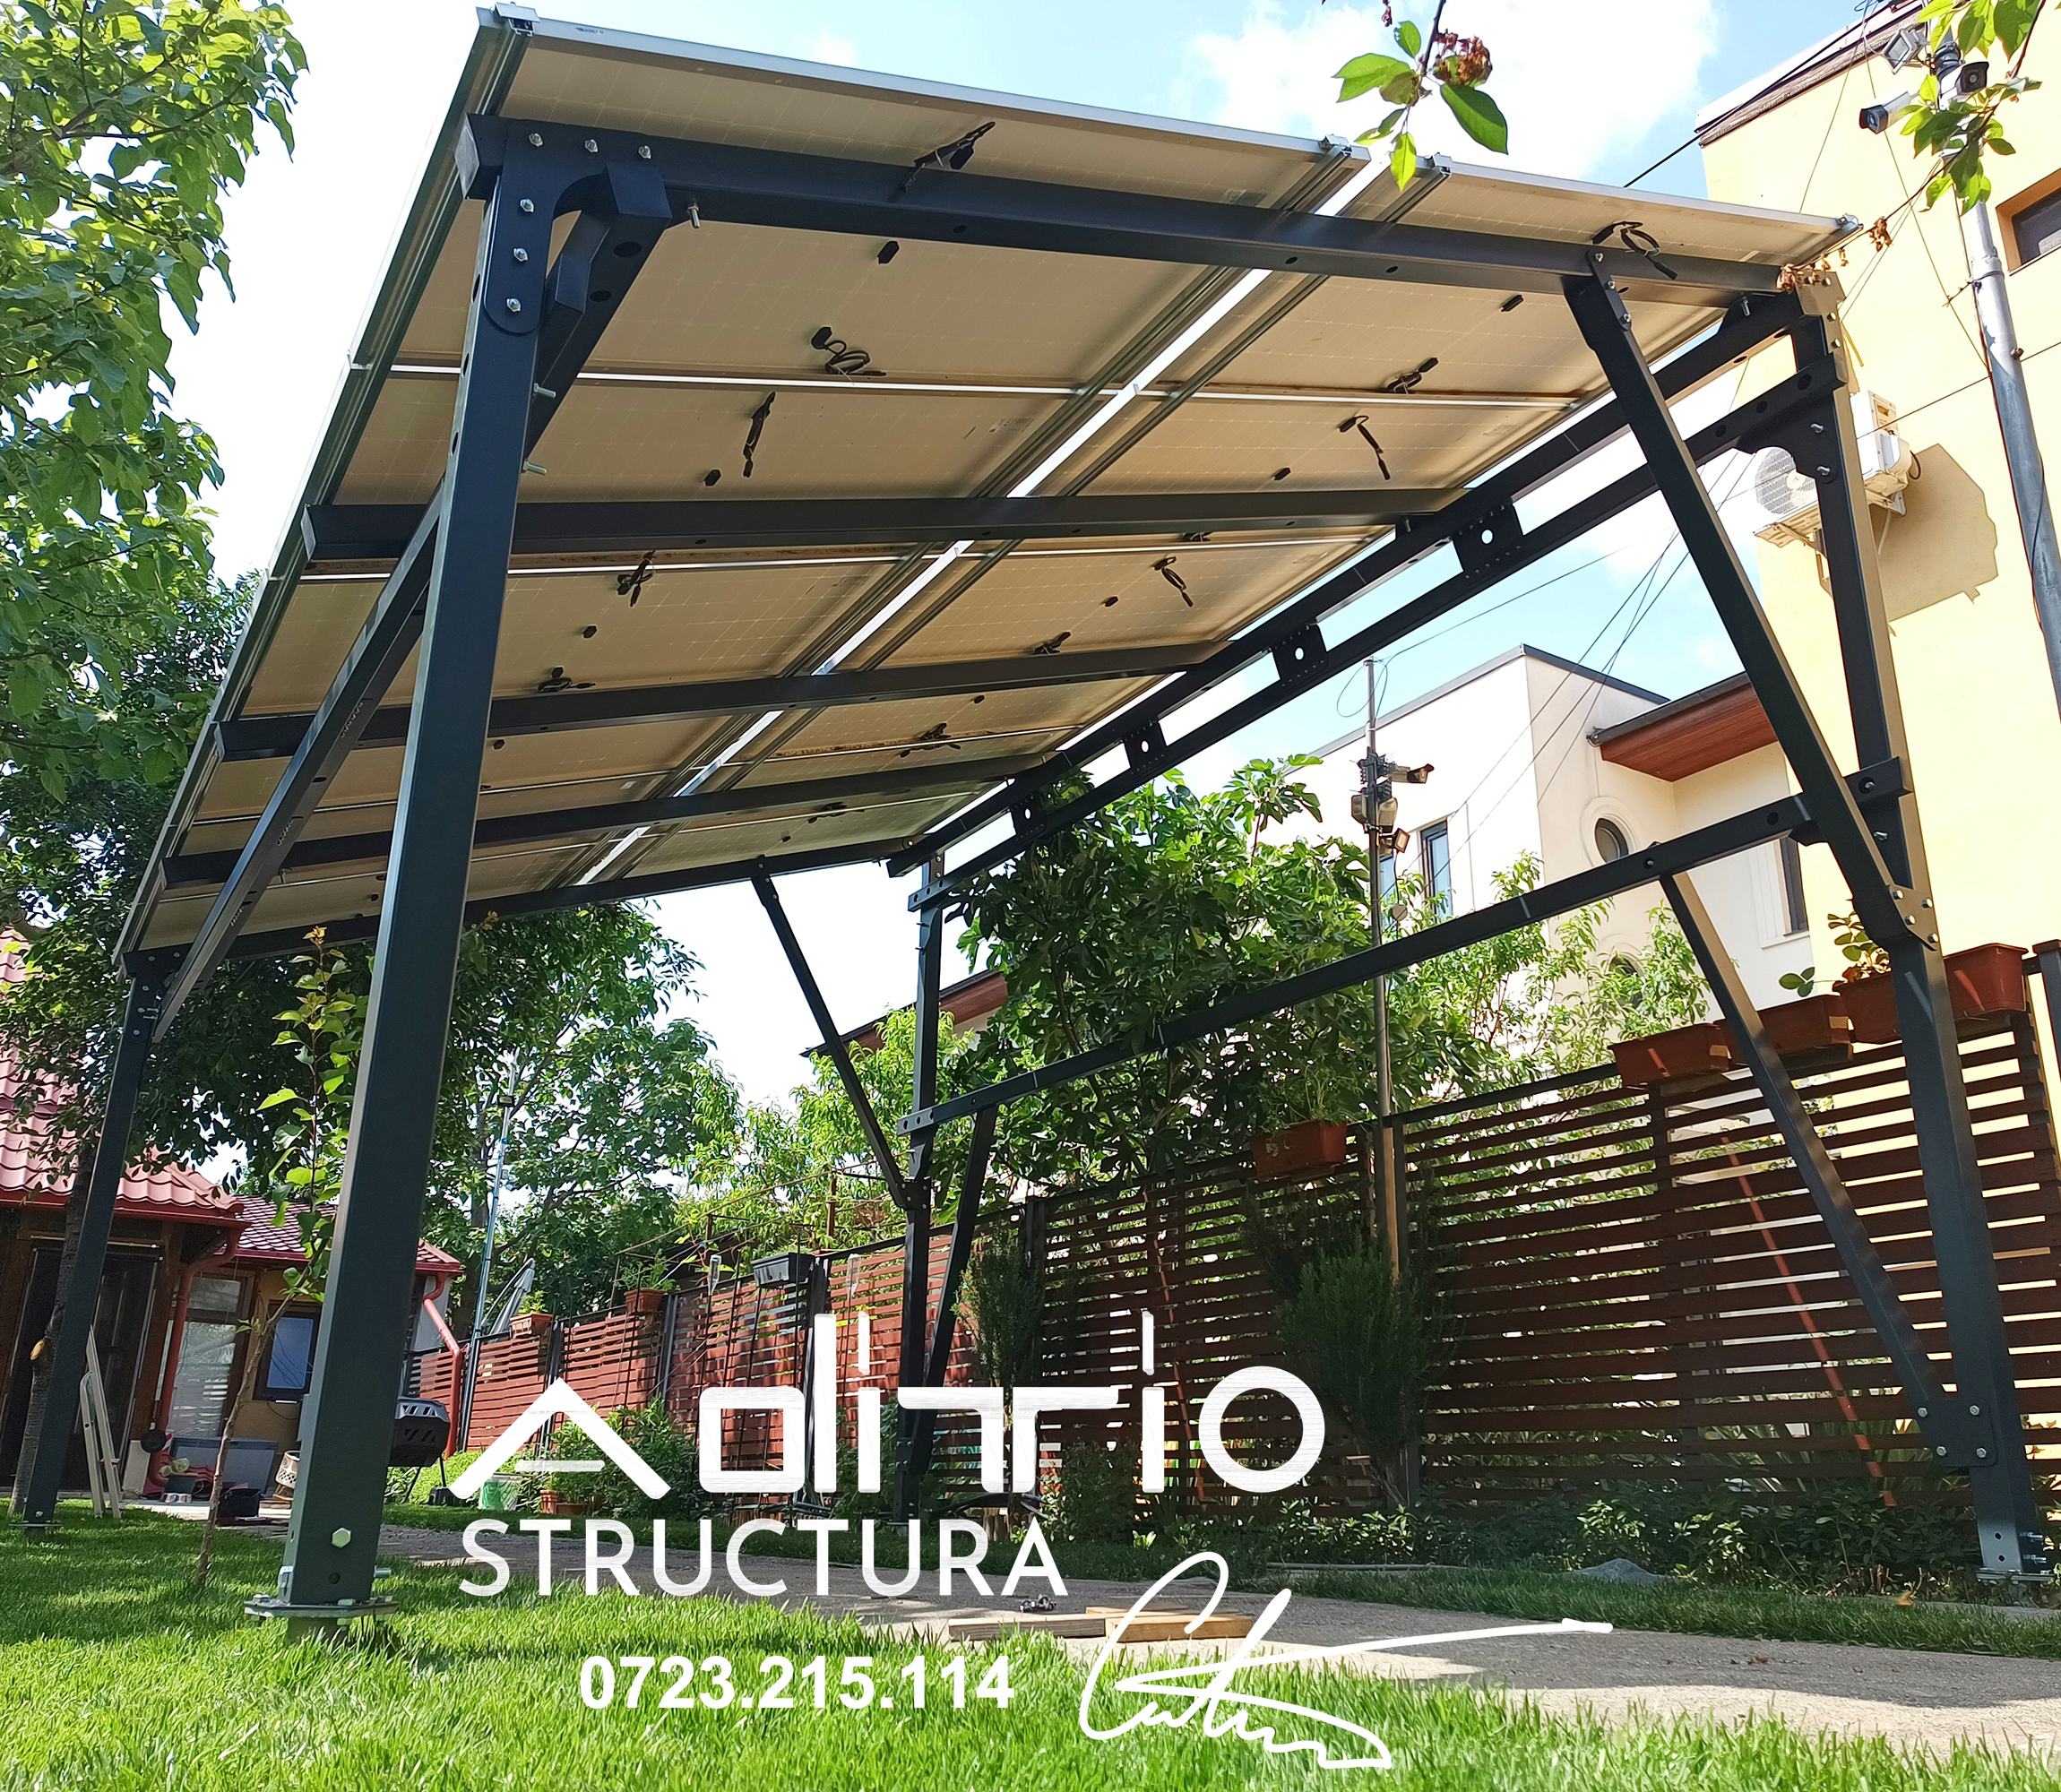 Structura-Rezidentiala-Terasa-Panouri-Fotovoltaice-13